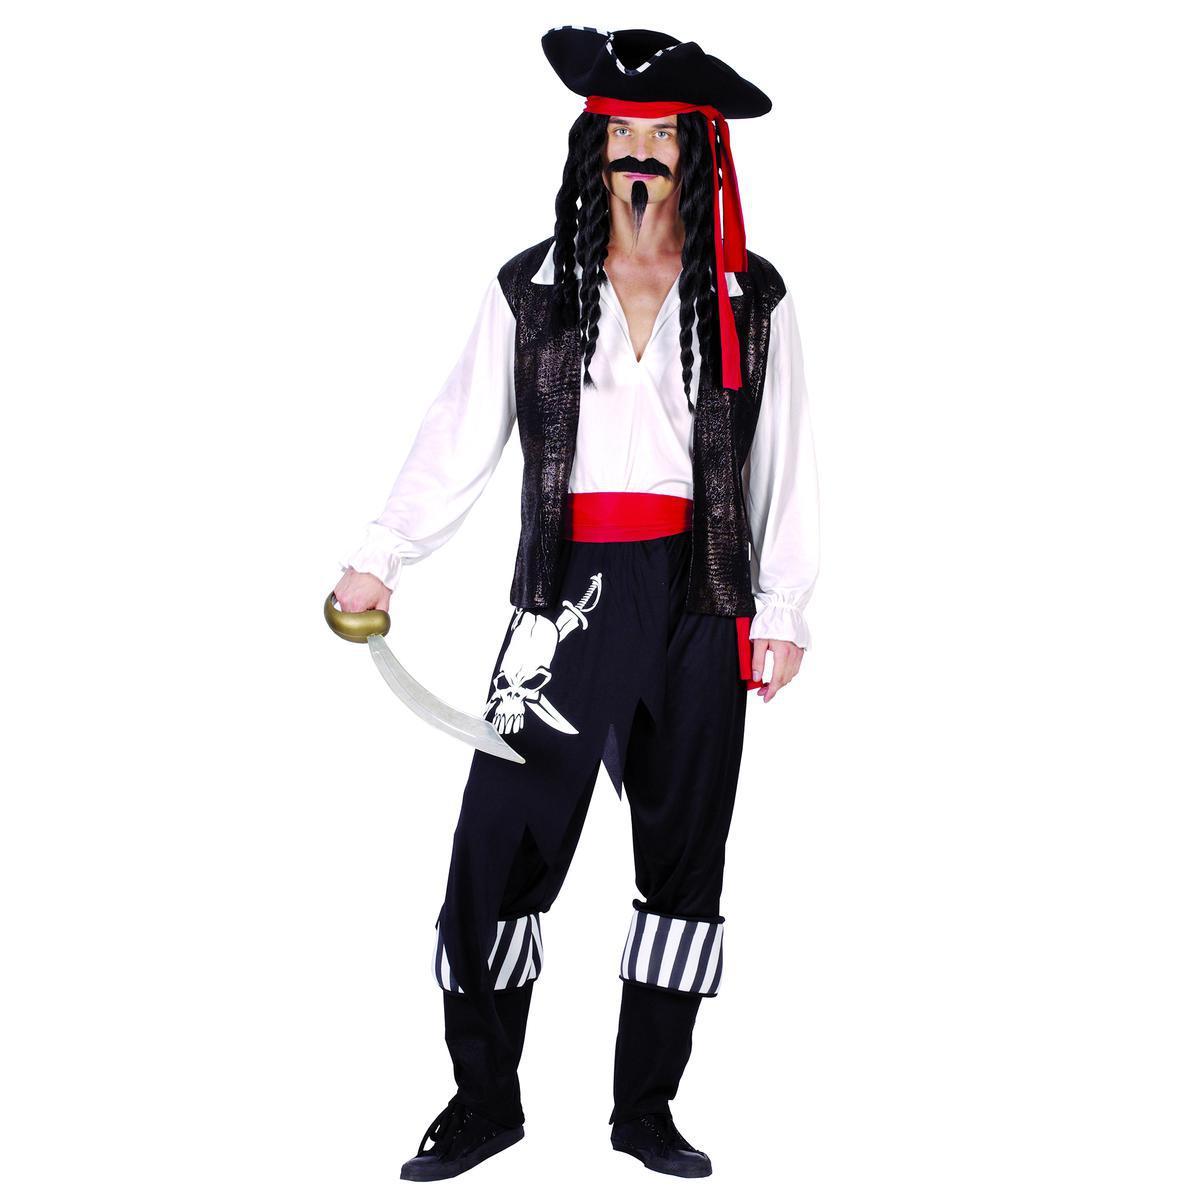 Déguisement d'homme du capitaine pirate - Polyester - Taille adulte - Noir, rouge et blanc